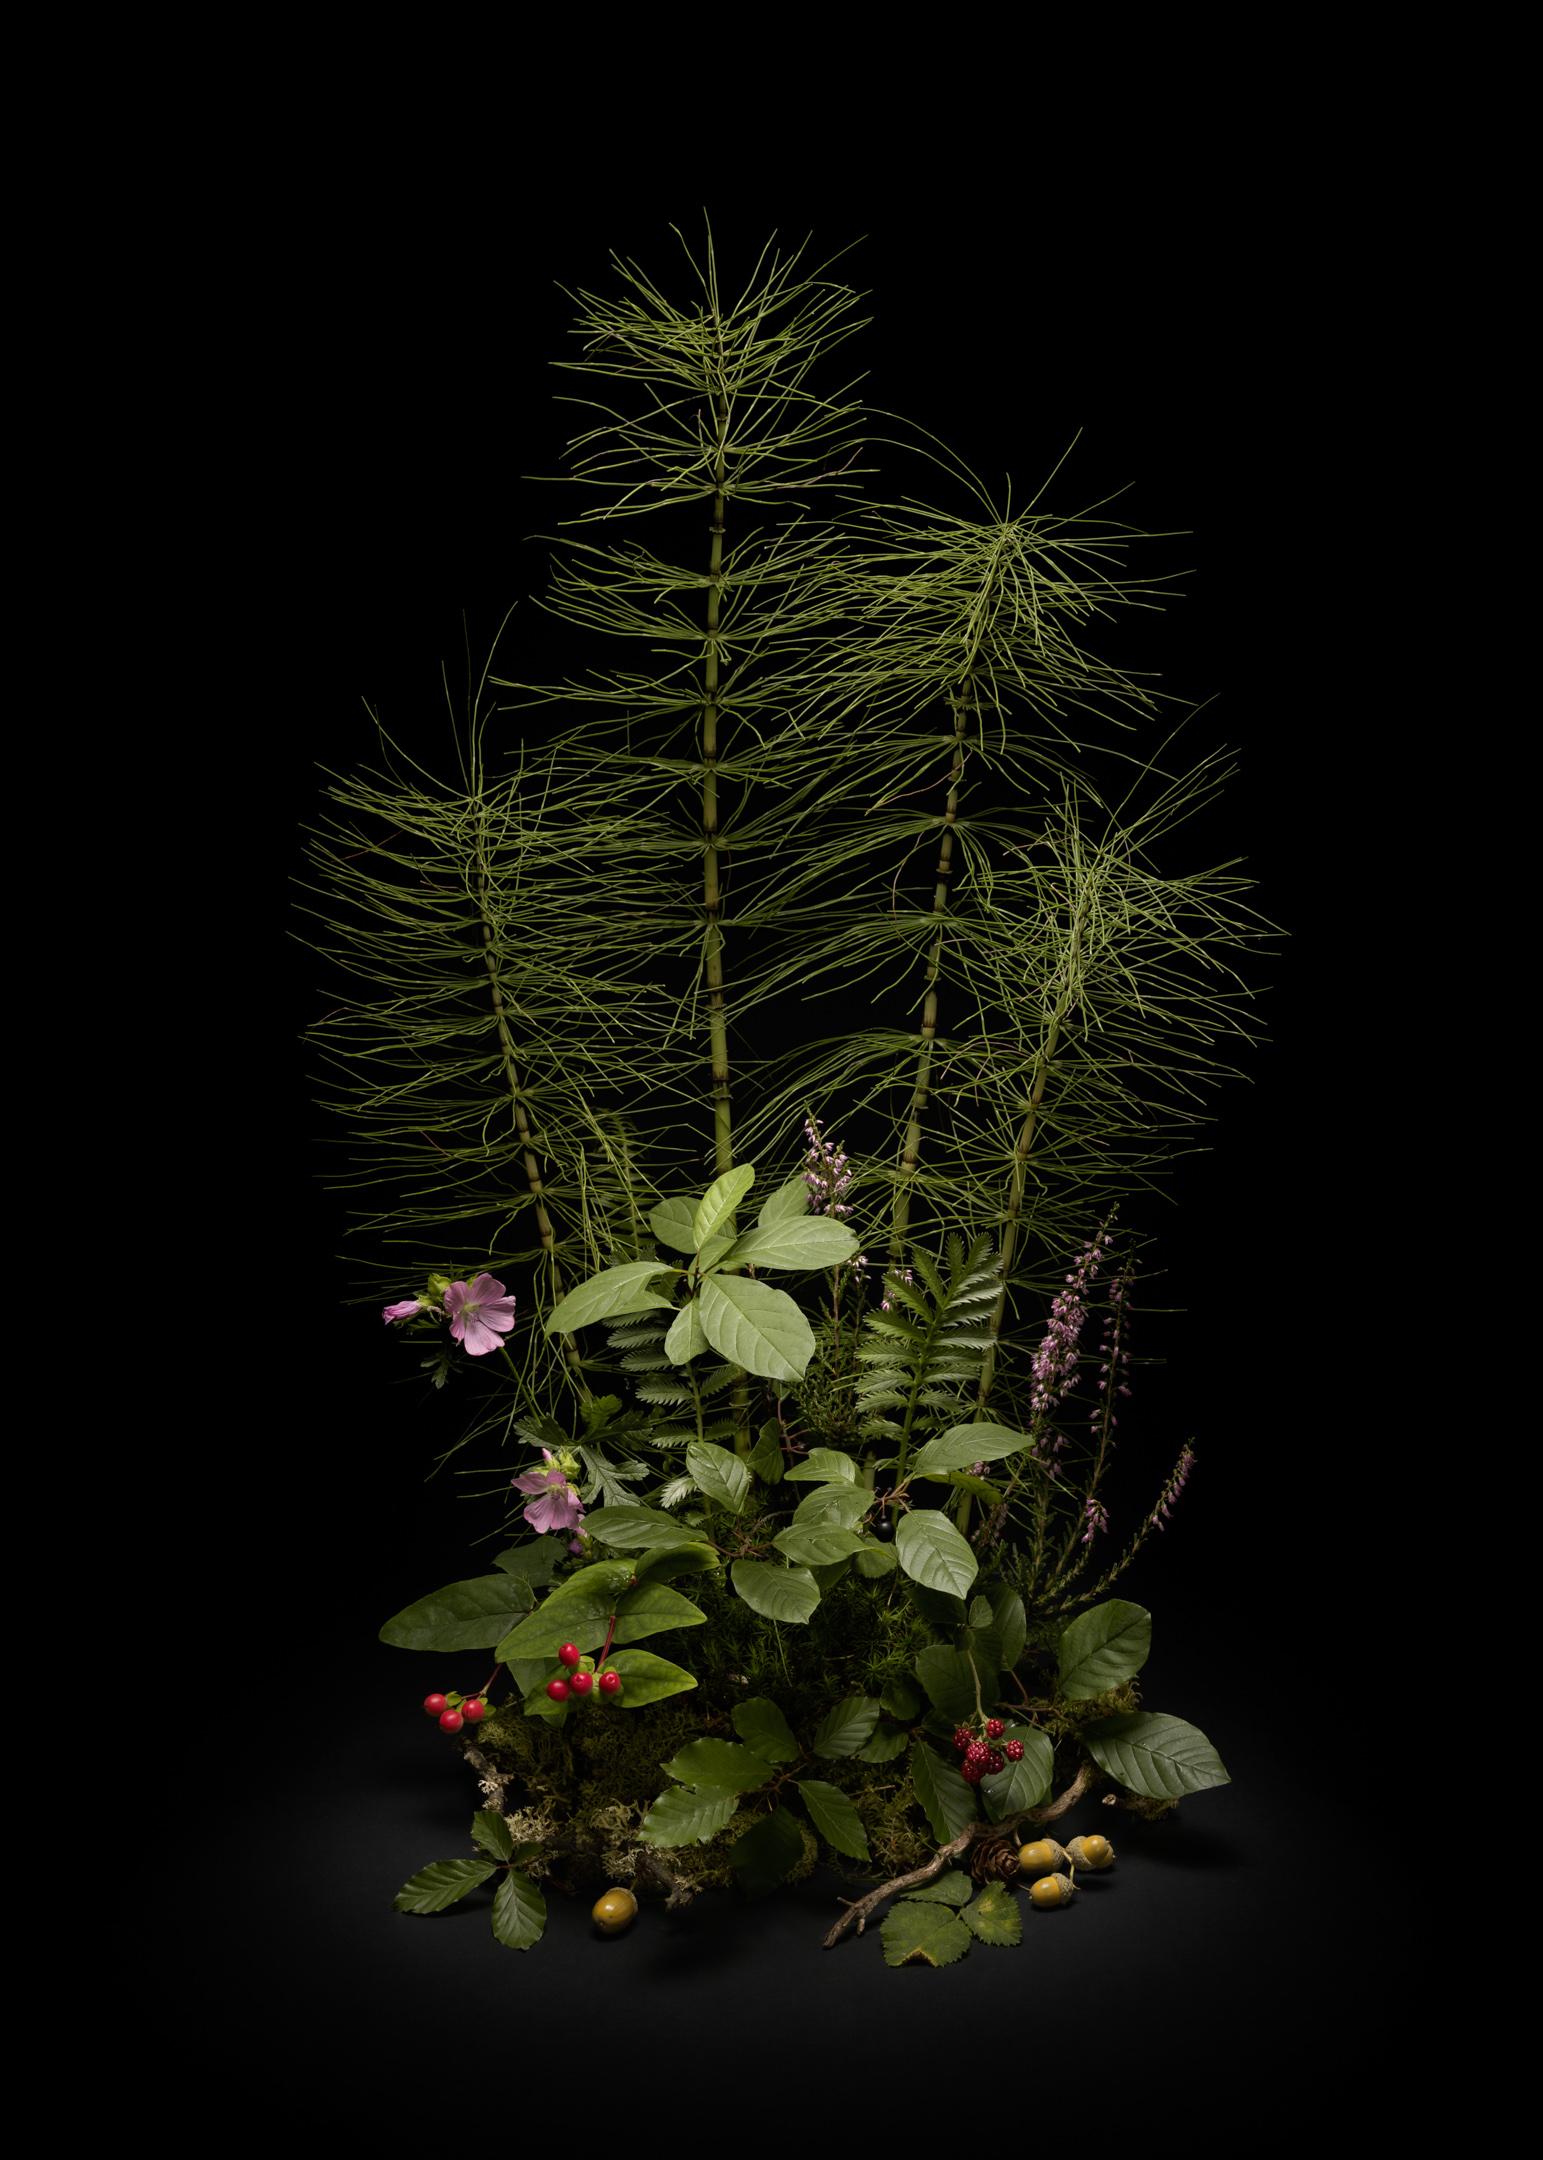 # Flora Dark, queue de cheval, arrangement floral de plantes et de fleurs sauvages